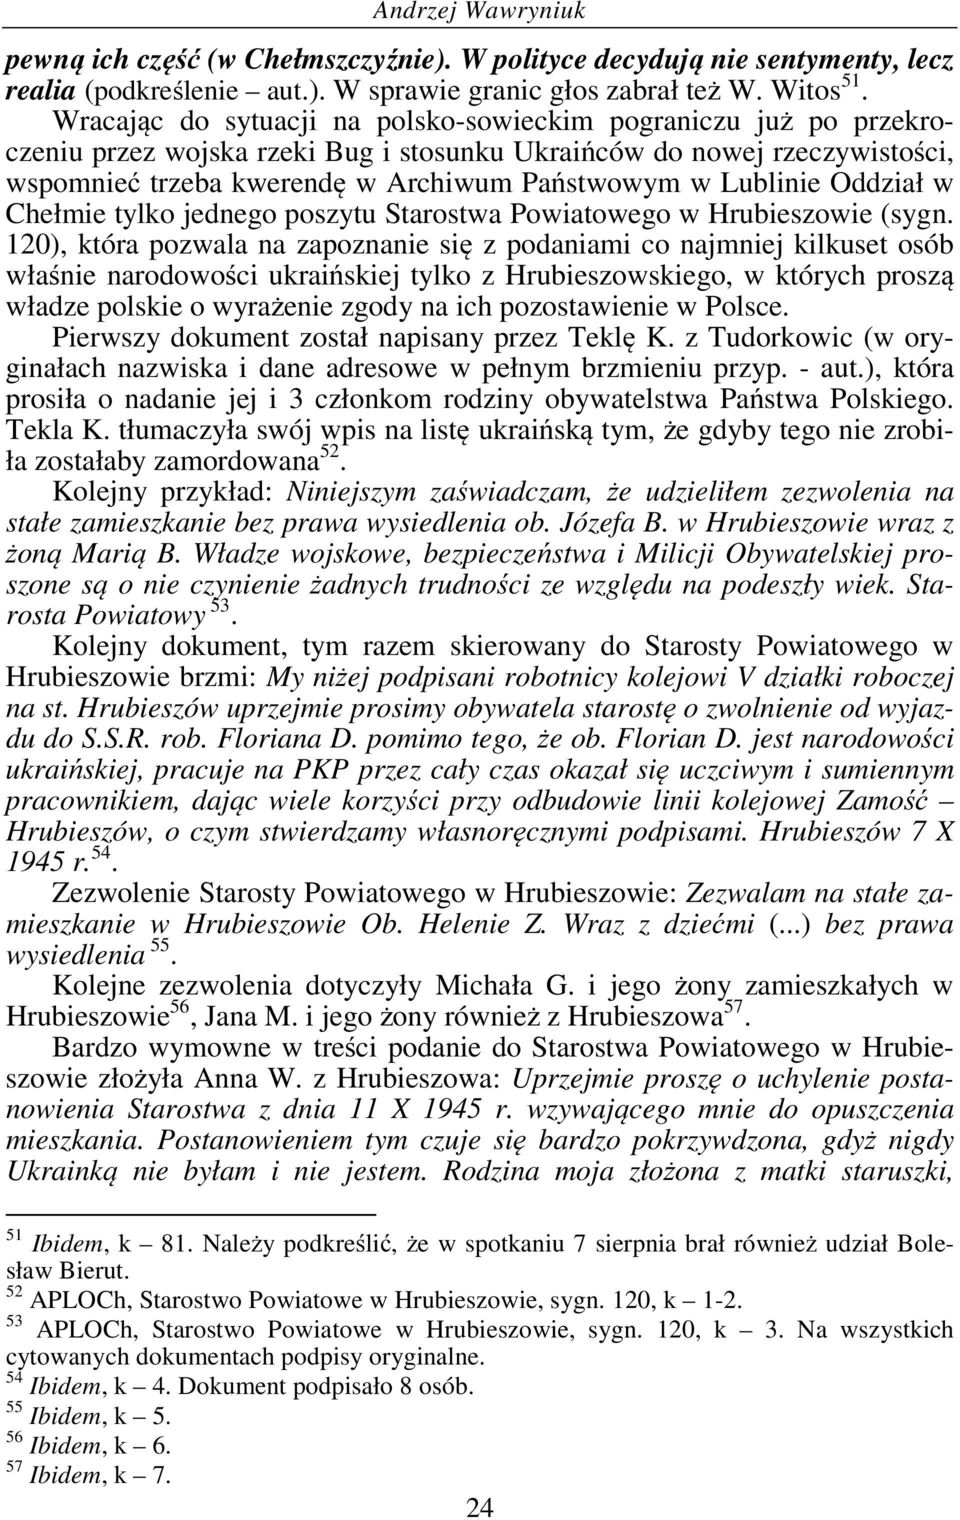 Lublinie Oddział w Chełmie tylko jednego poszytu Starostwa Powiatowego w Hrubieszowie (sygn.